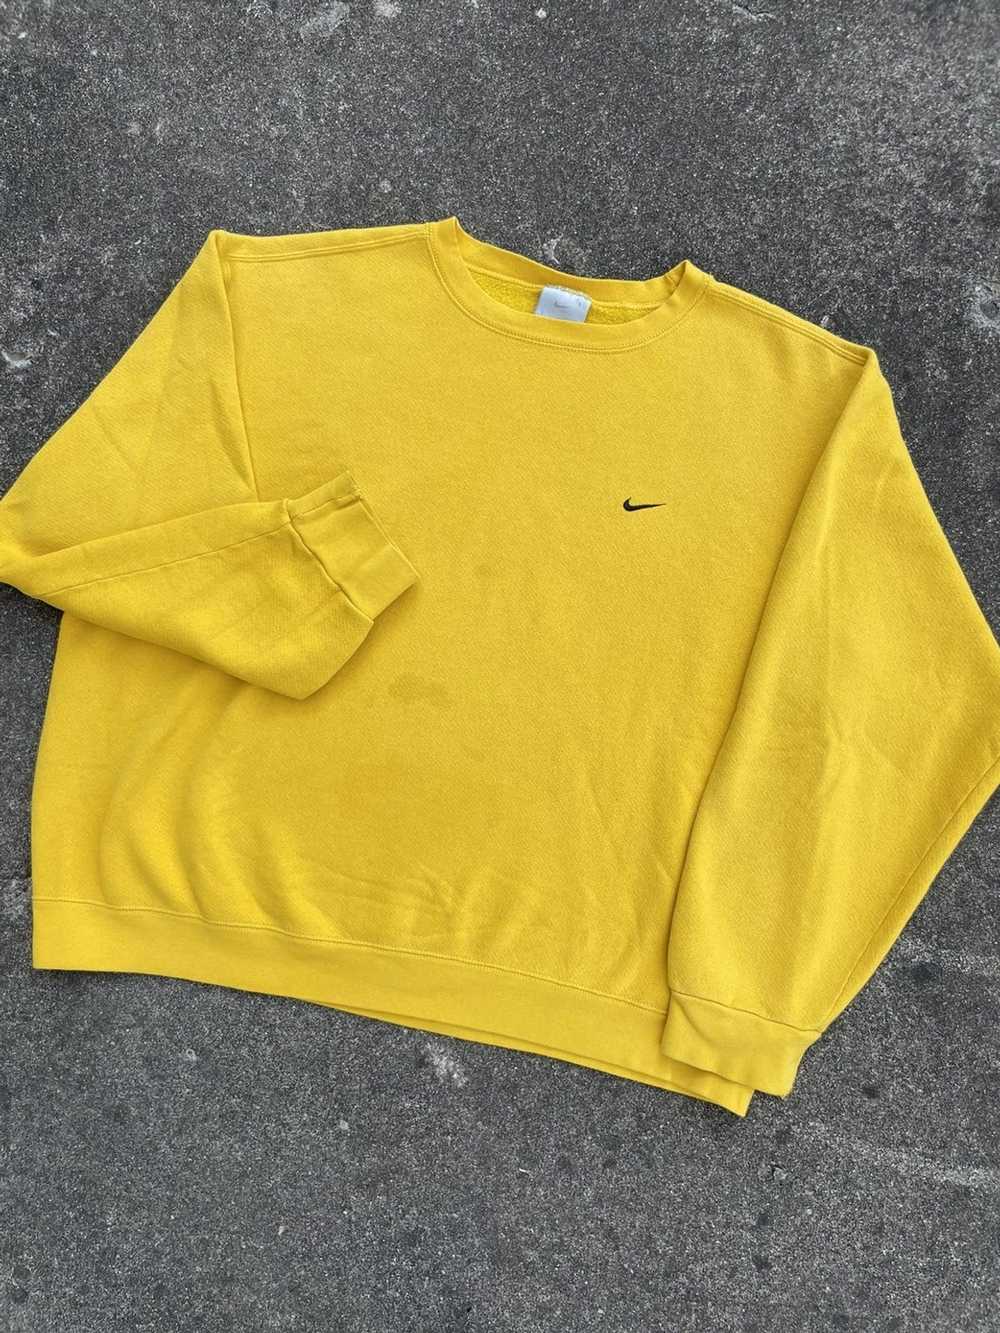 Nike × Streetwear × Vintage Vintage Nike yellow s… - image 2